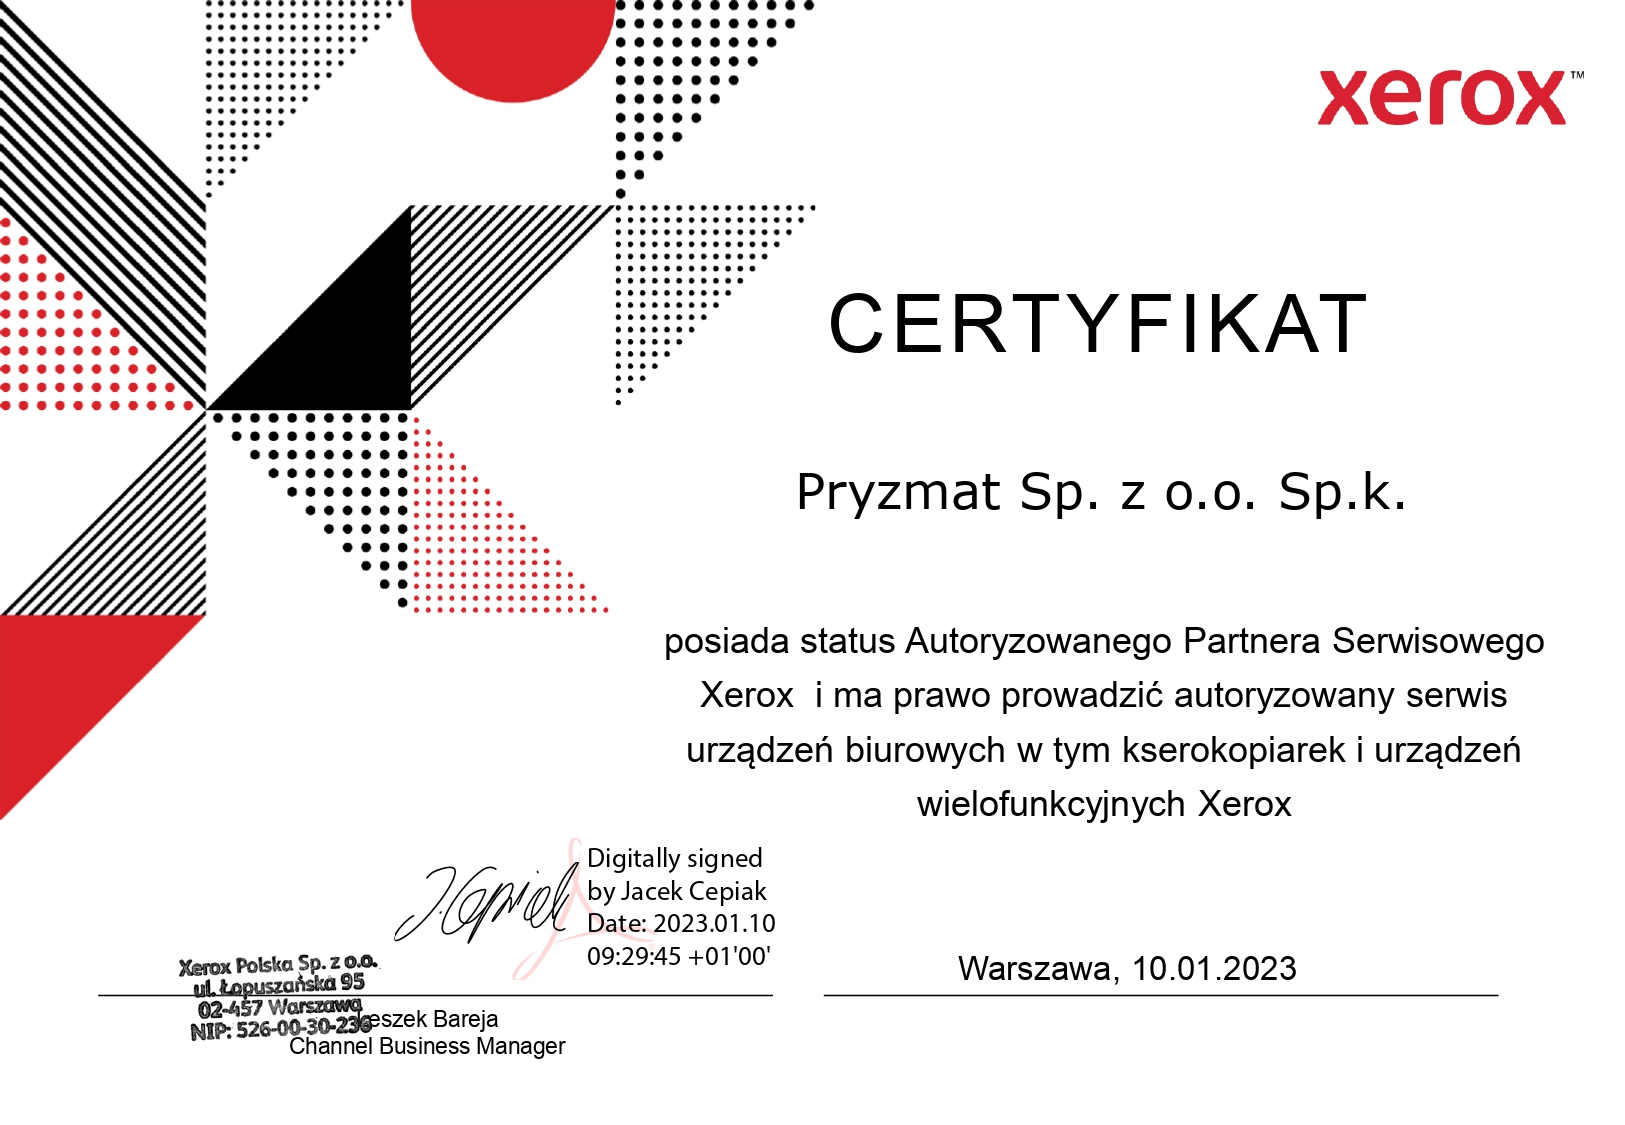 Certyfikat Xerox 2023 1 page 0001